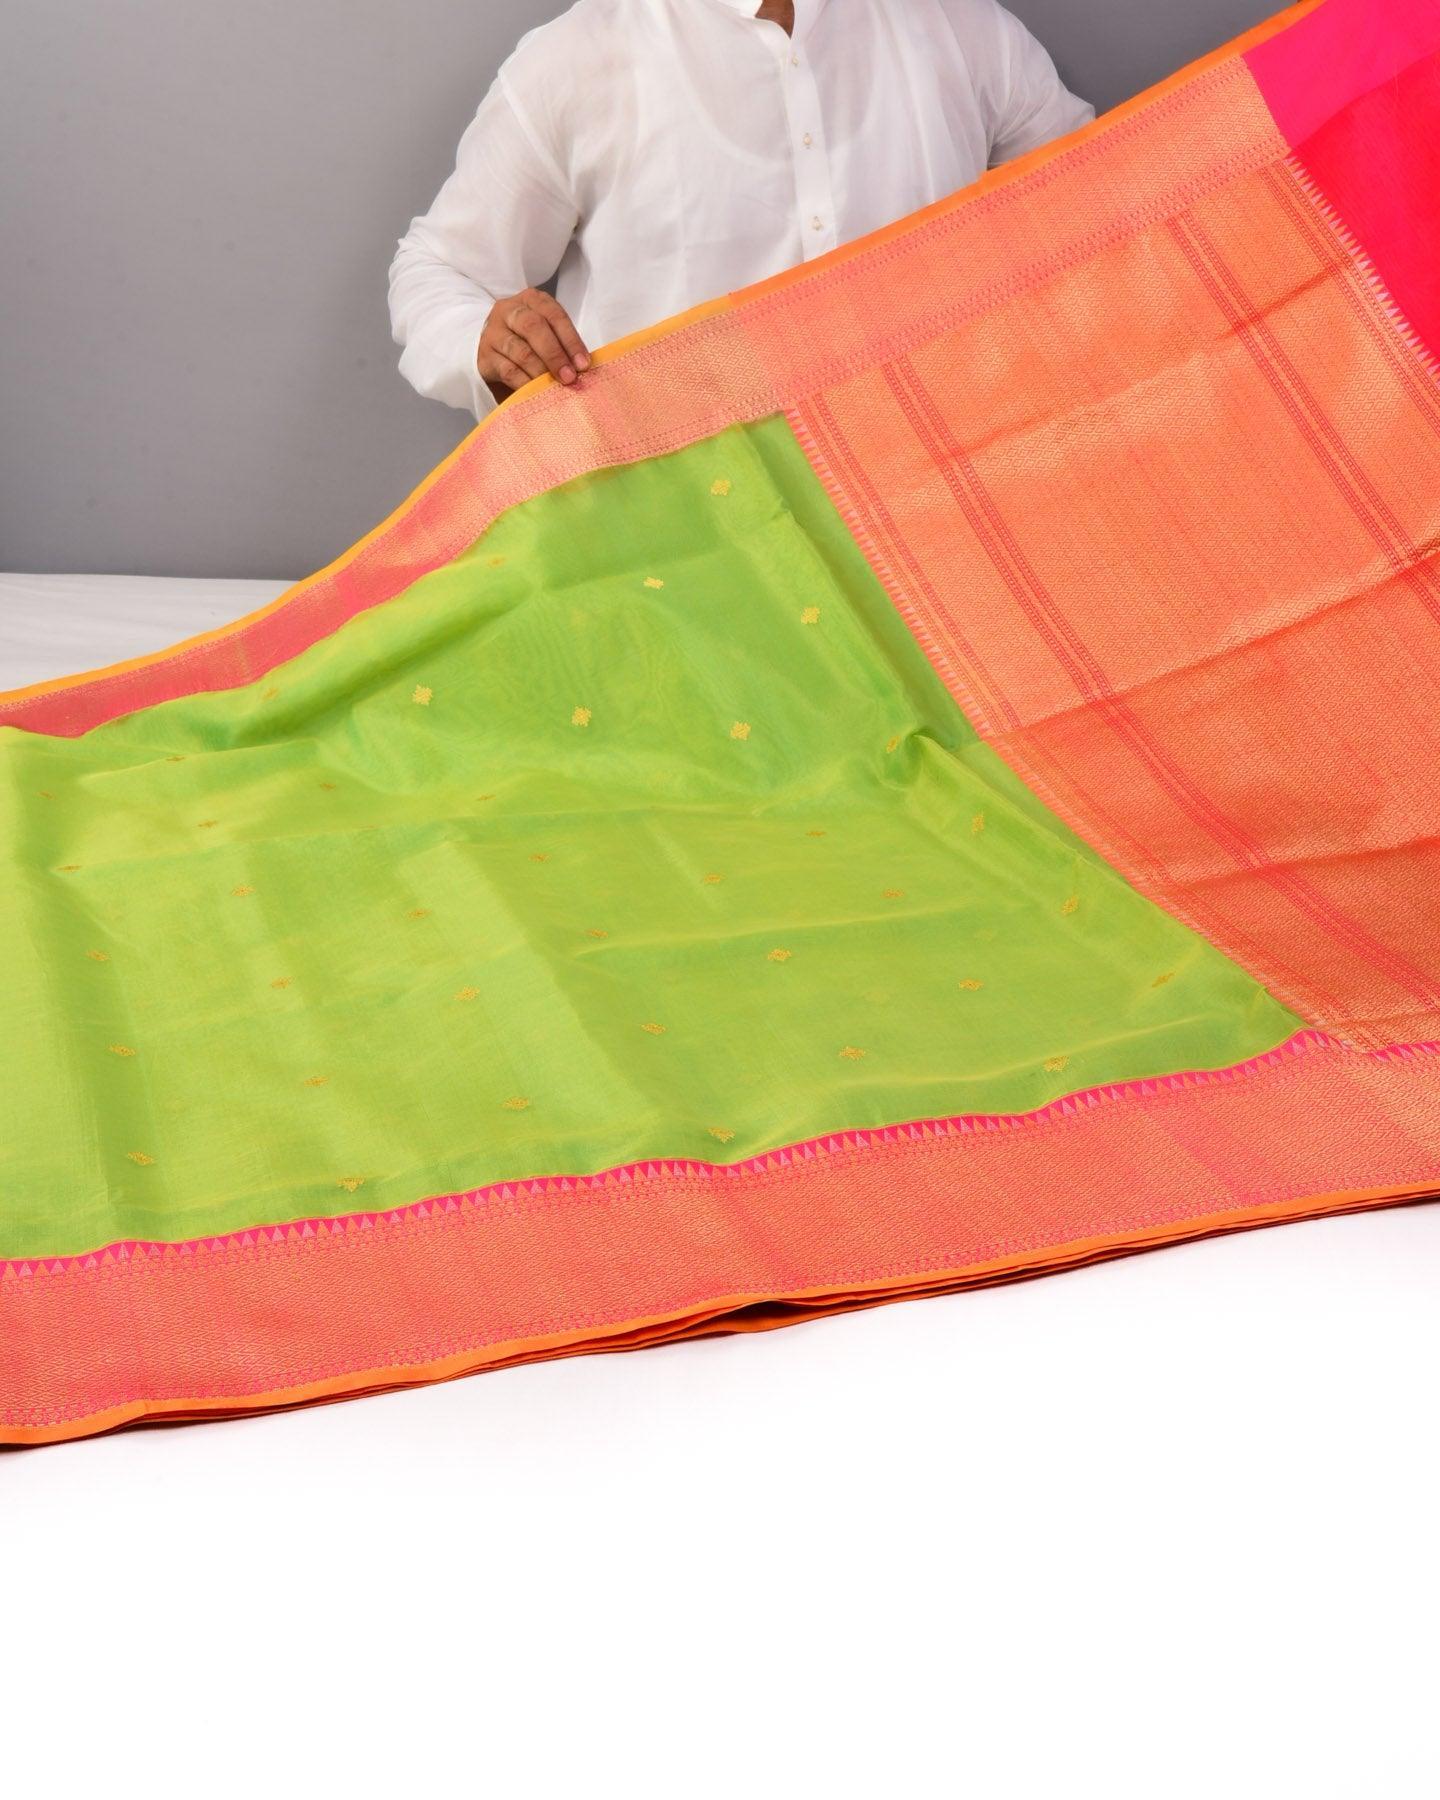 Sunny Green Banarasi Kadhuan Brocade Handwoven Kora Silk Saree with Contrast Brocade Blouse - By HolyWeaves, Benares